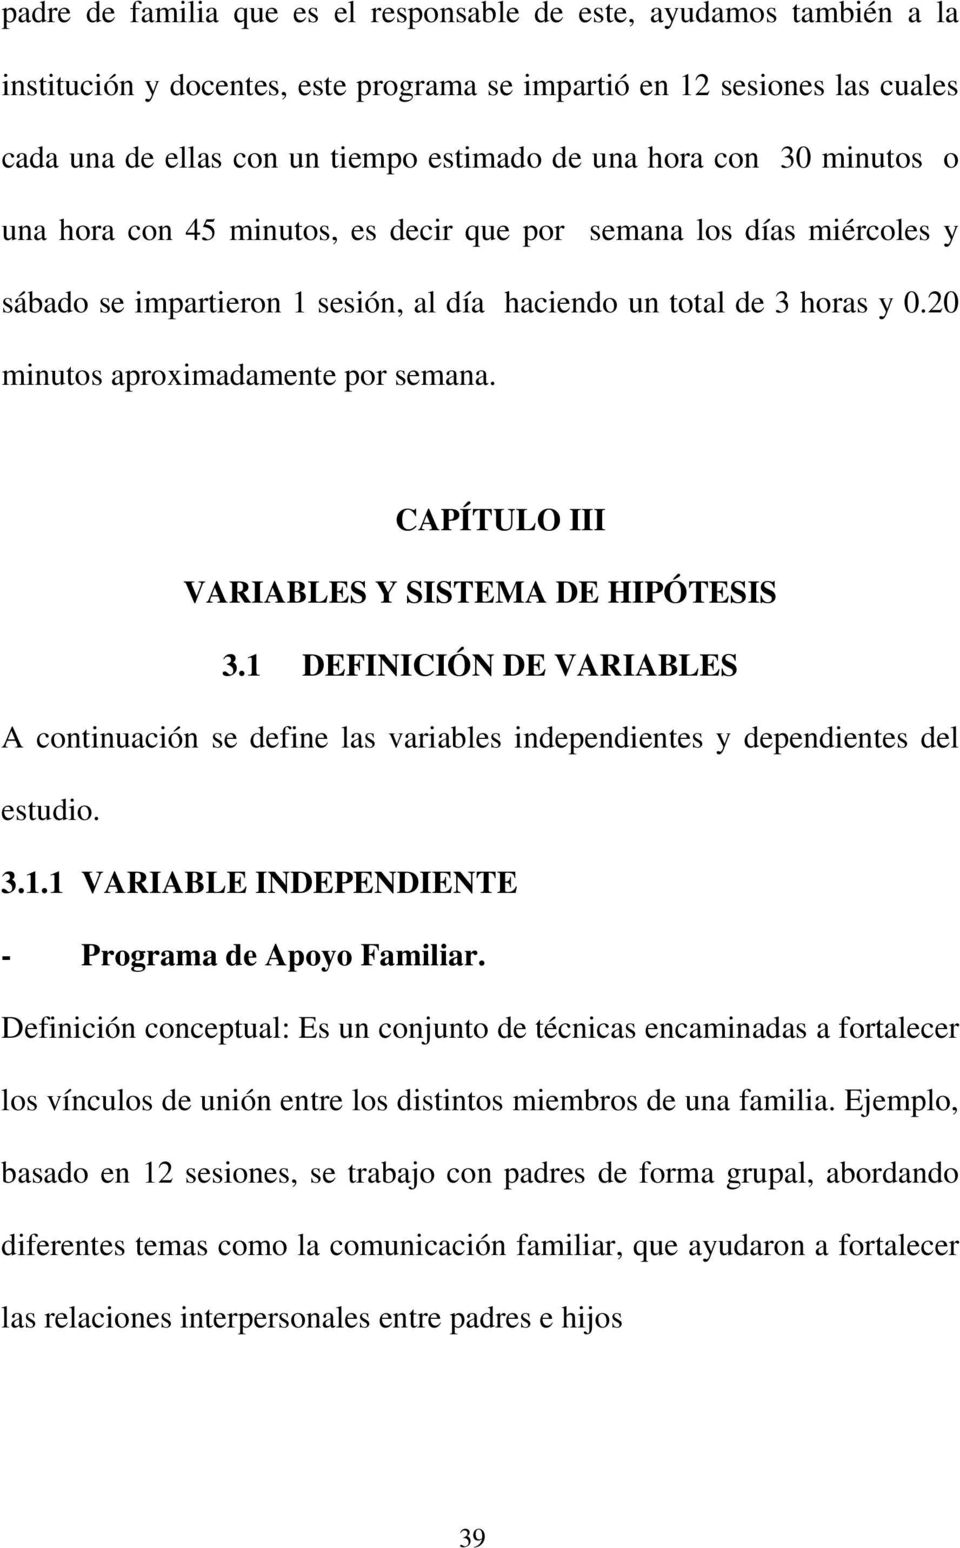 CAPÍTULO III VARIABLES Y SISTEMA DE HIPÓTESIS 3.1 DEFINICIÓN DE VARIABLES A continuación se define las variables independientes y dependientes del estudio. 3.1.1 VARIABLE INDEPENDIENTE - Programa de Apoyo Familiar.